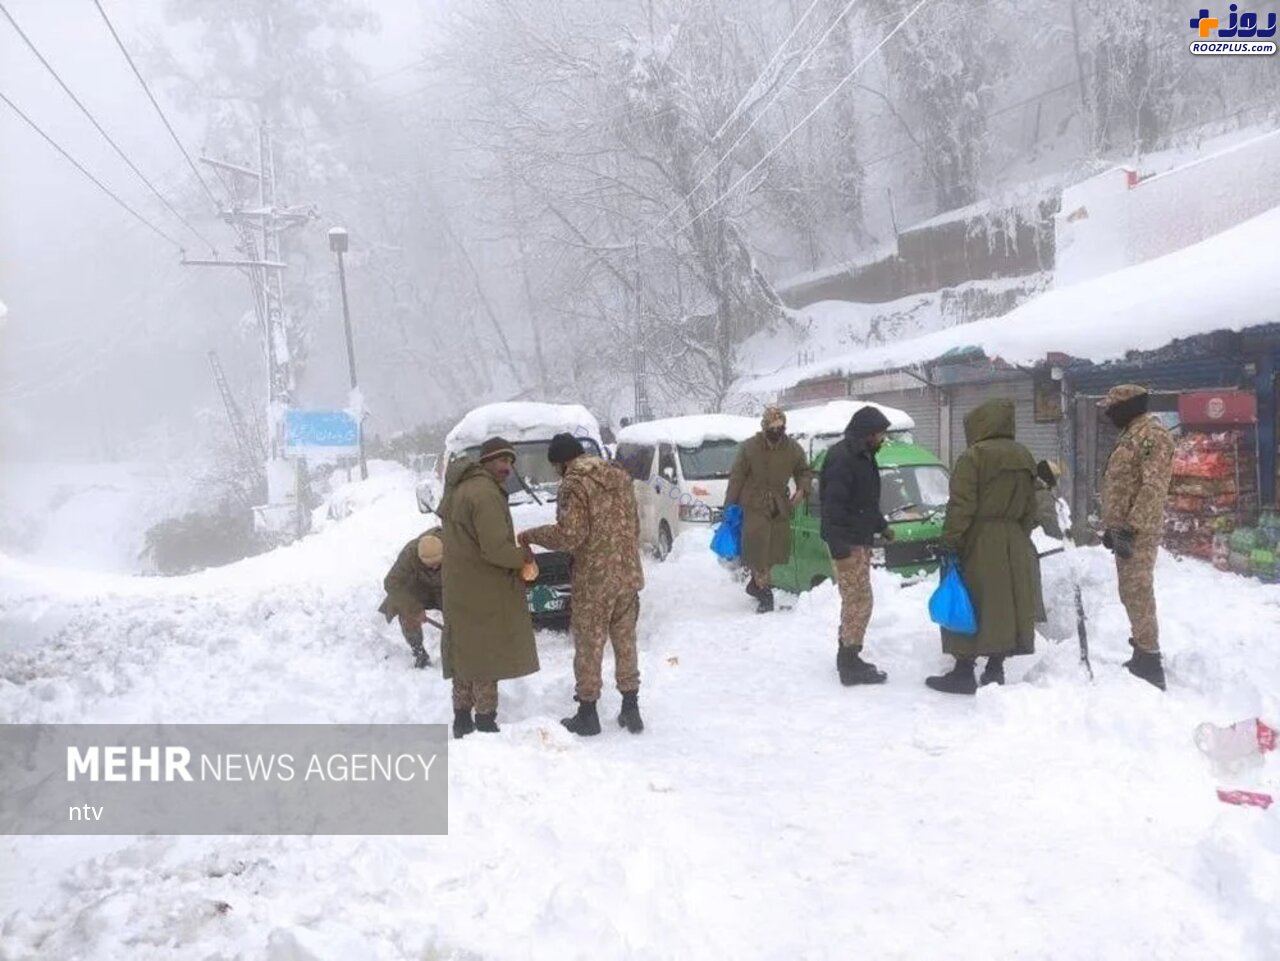 بارش برف شدید در پاکستان با 21 نفر جان باخته! +عکس